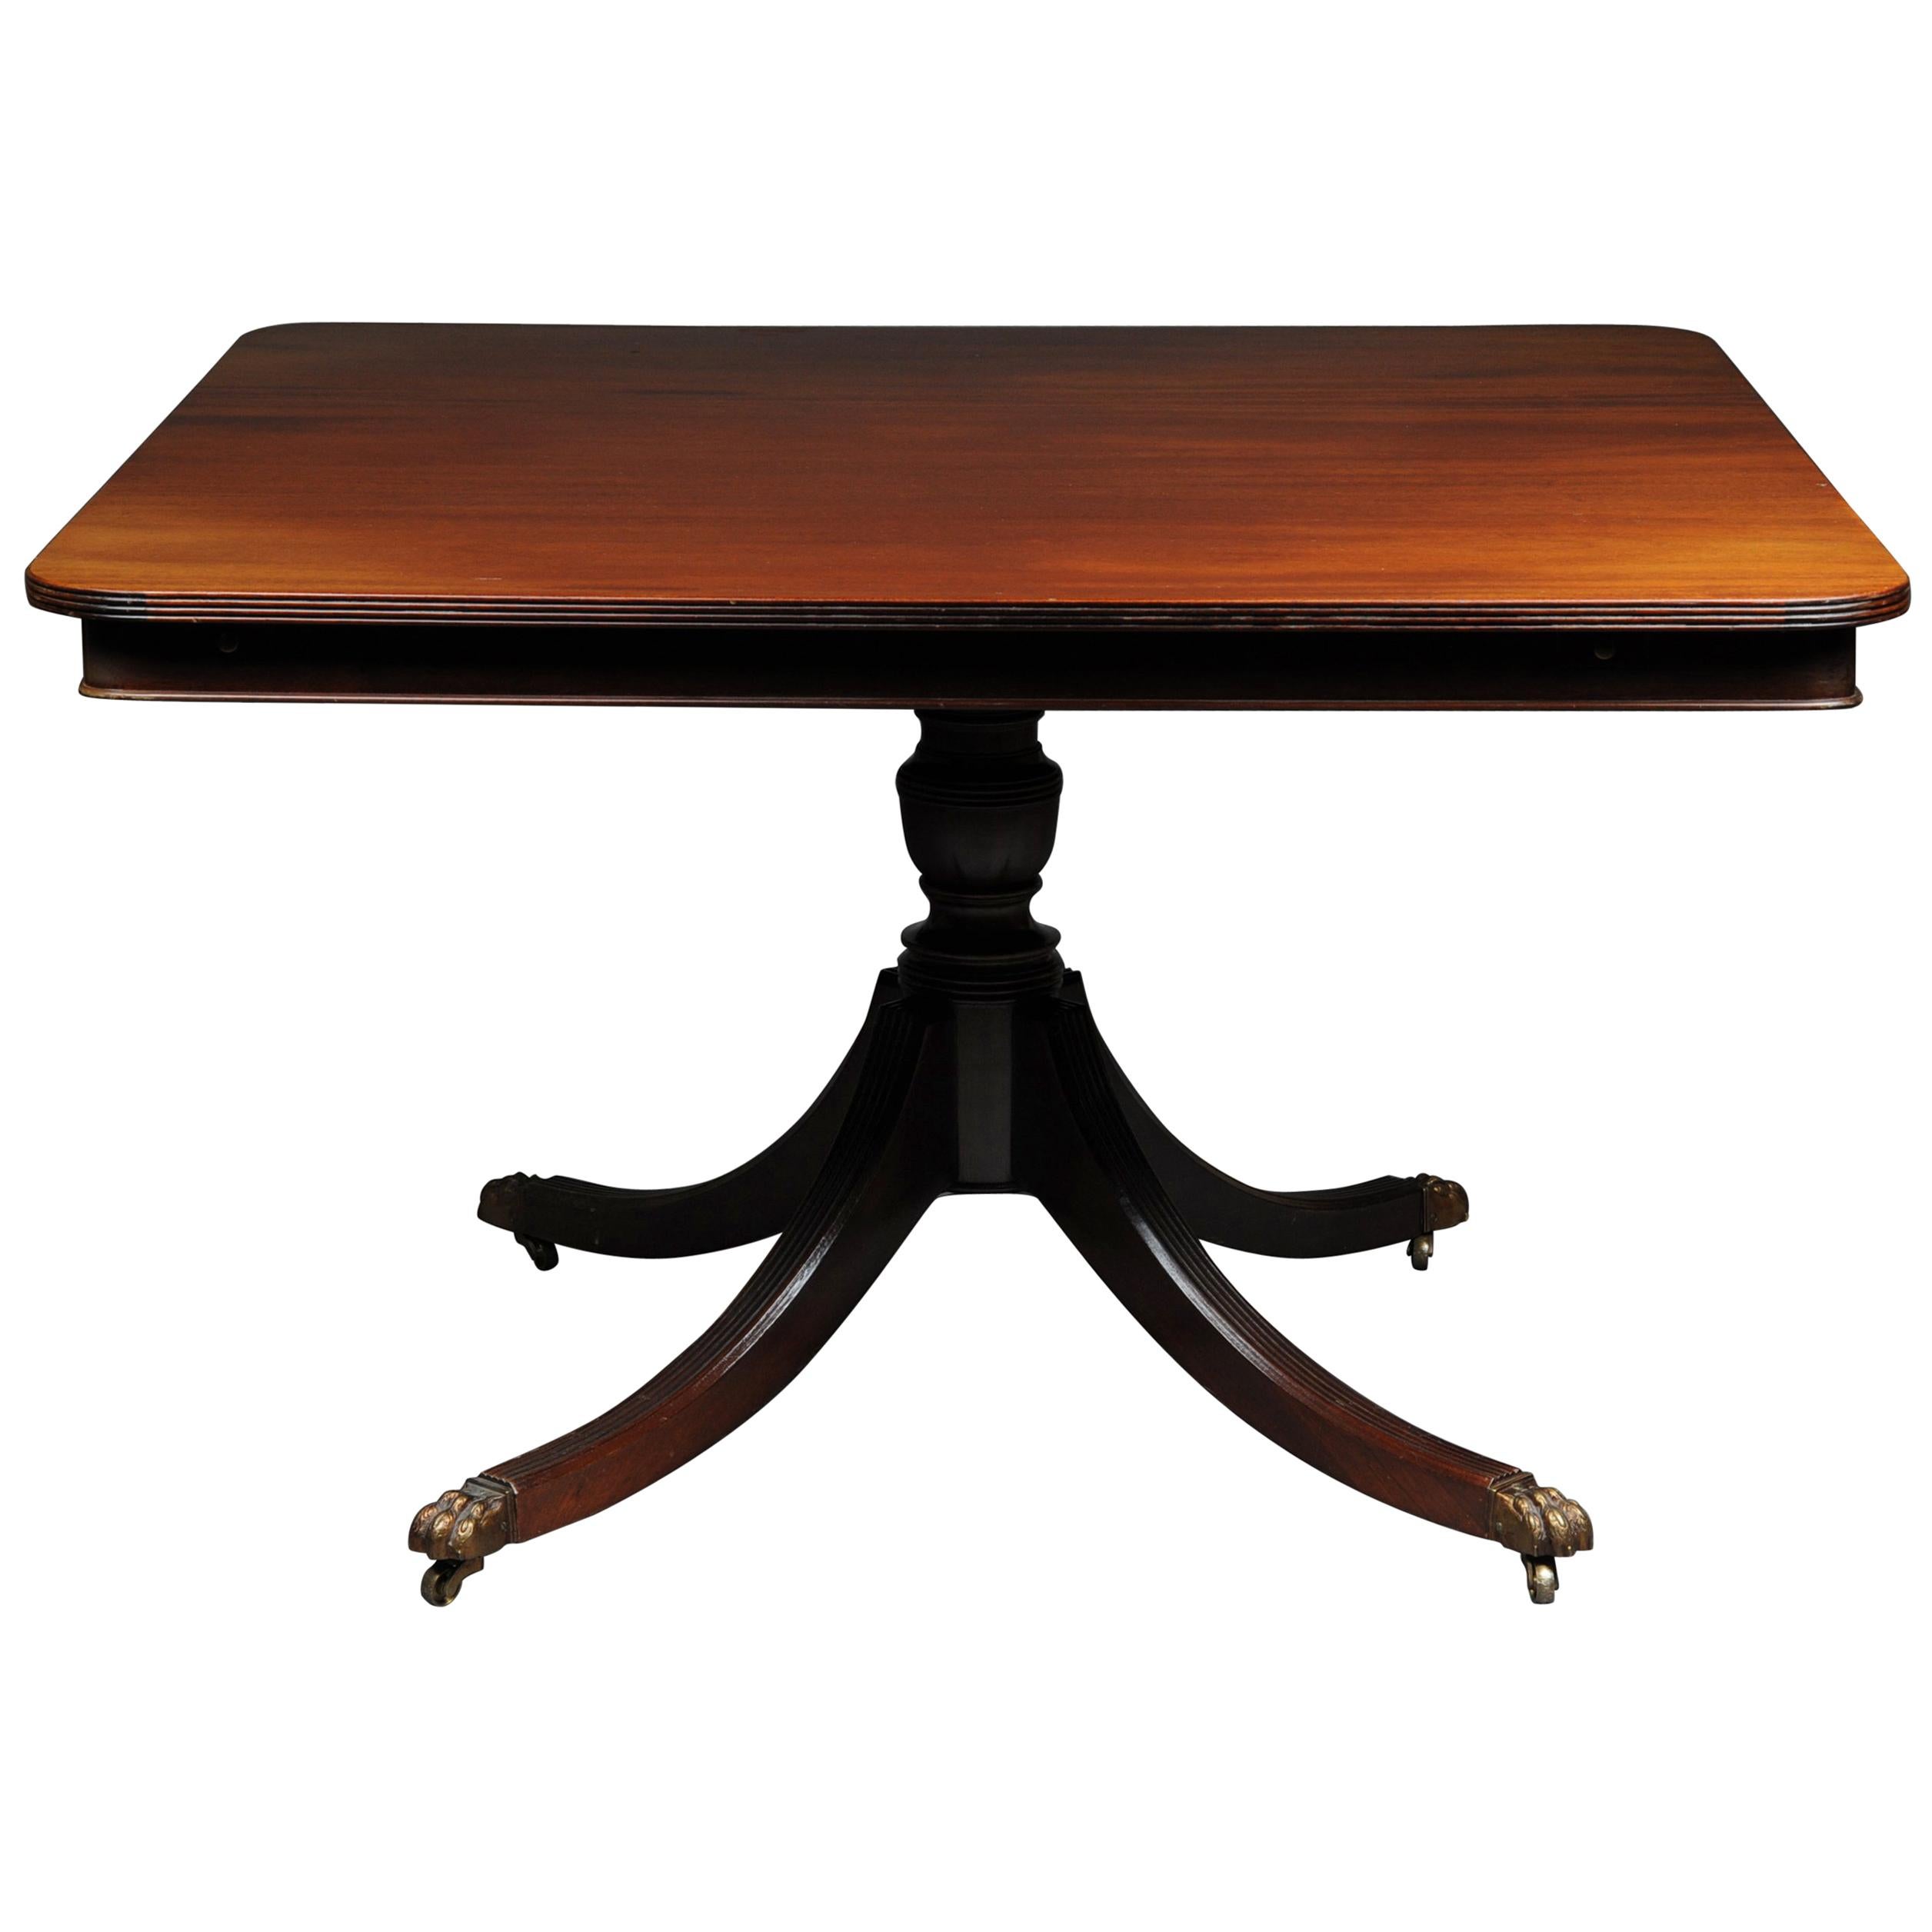 Englischer Esstisch / Tisch, Mahagoni, viktorianisch, ausziehbar